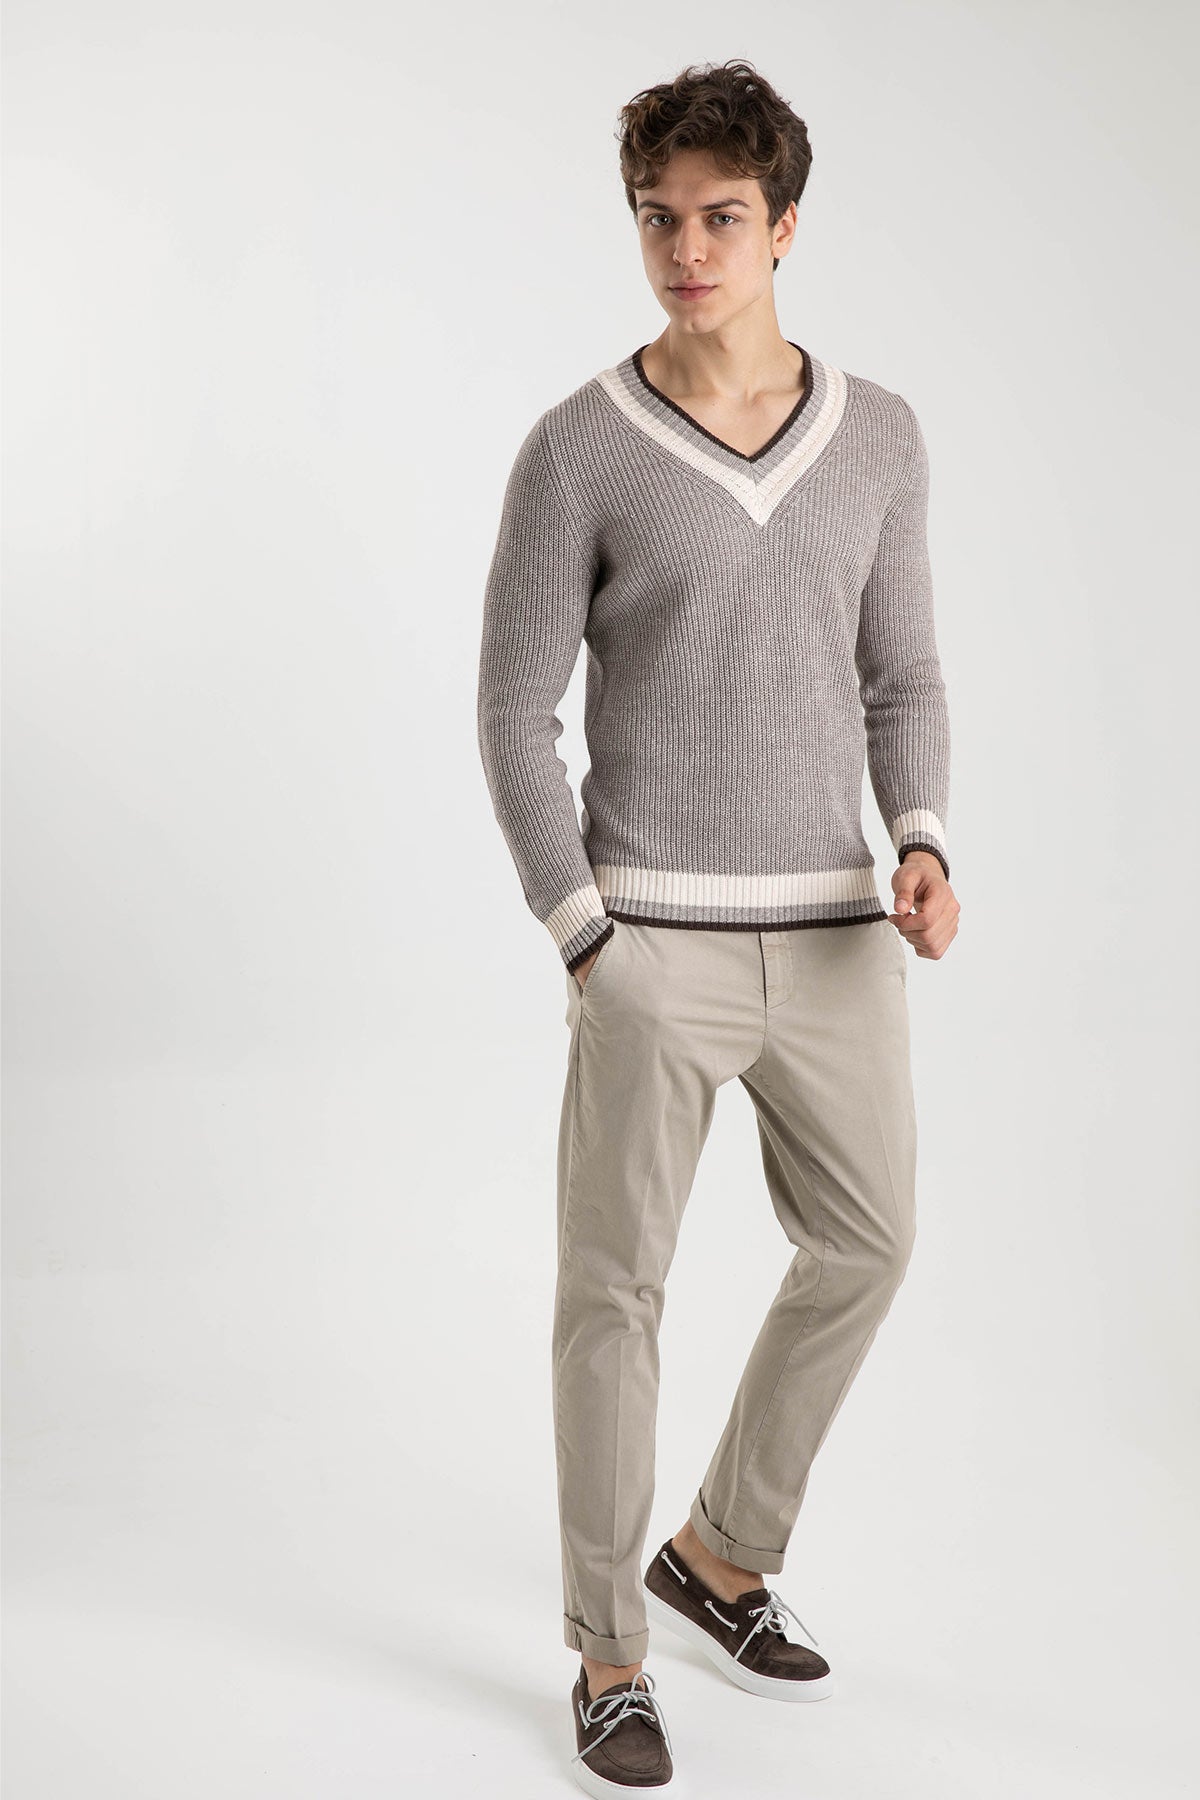 Dondup Yandan Cepli Slim Fit Pantolon-Libas Trendy Fashion Store